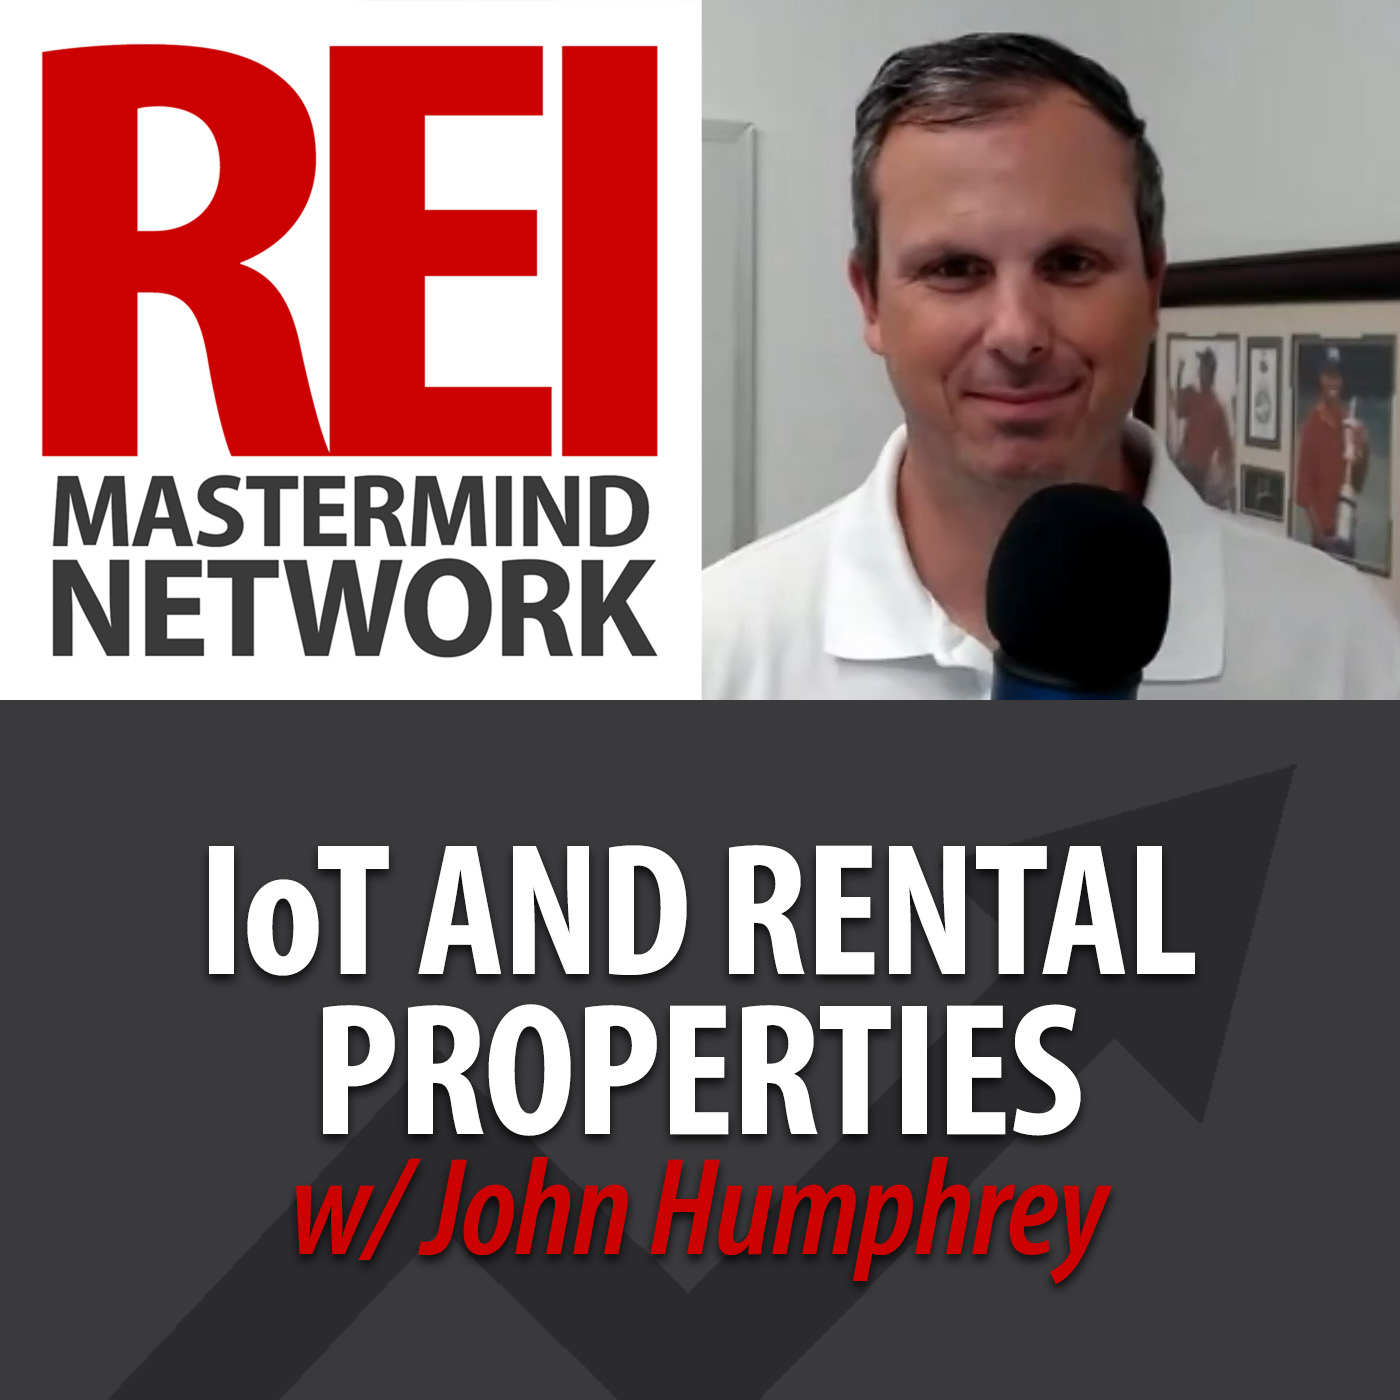 IoT and Rental Properties with John Humphrey